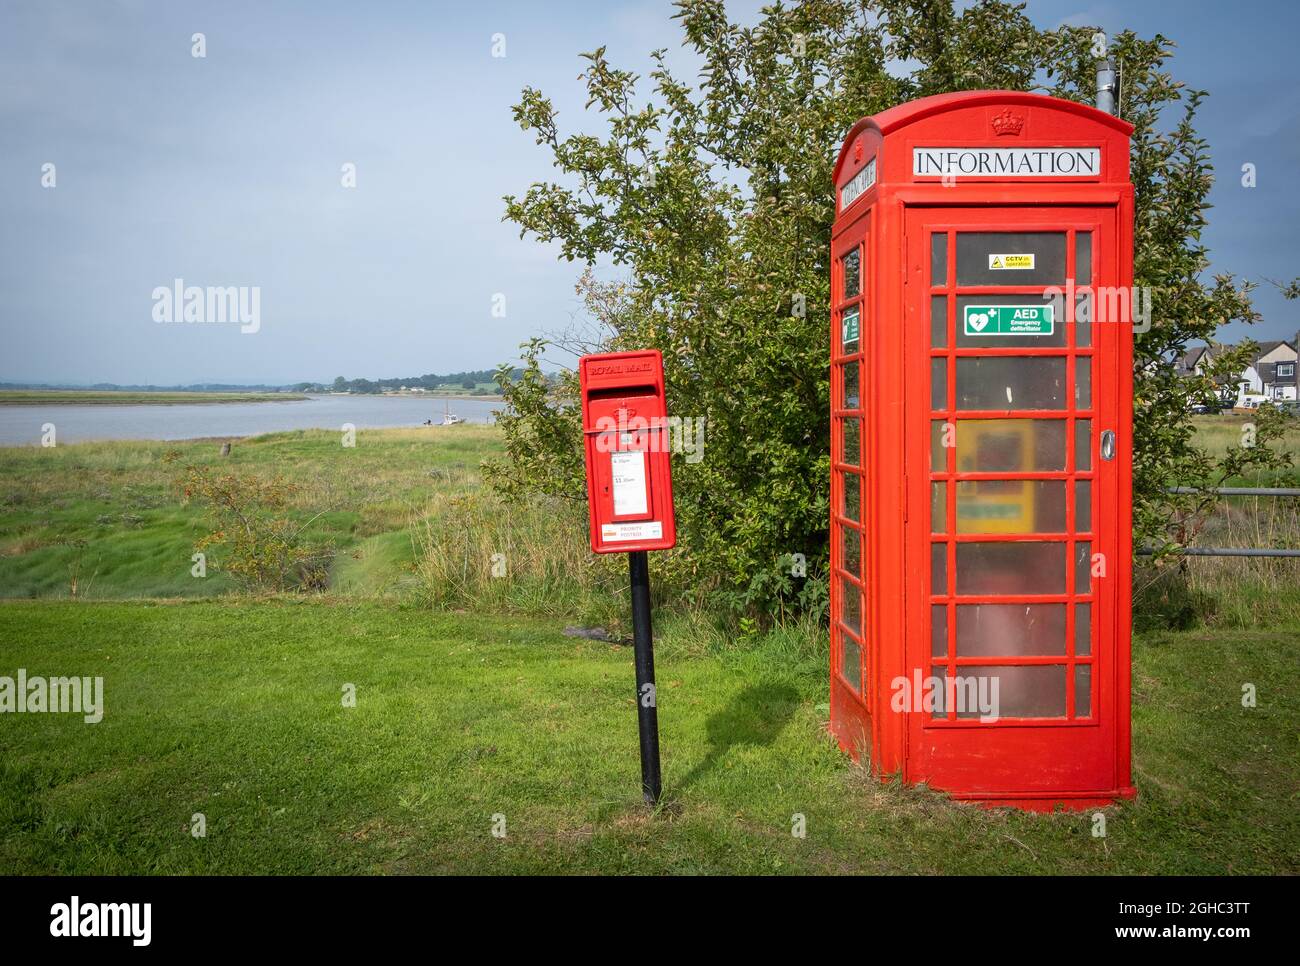 Vecchia cassetta postale Royal Mail e un defibrillatore di emergenza in un vecchio phonebox rosso, villaggio di Glencaple, Dumfries e Galloway, Scozia. Foto Stock